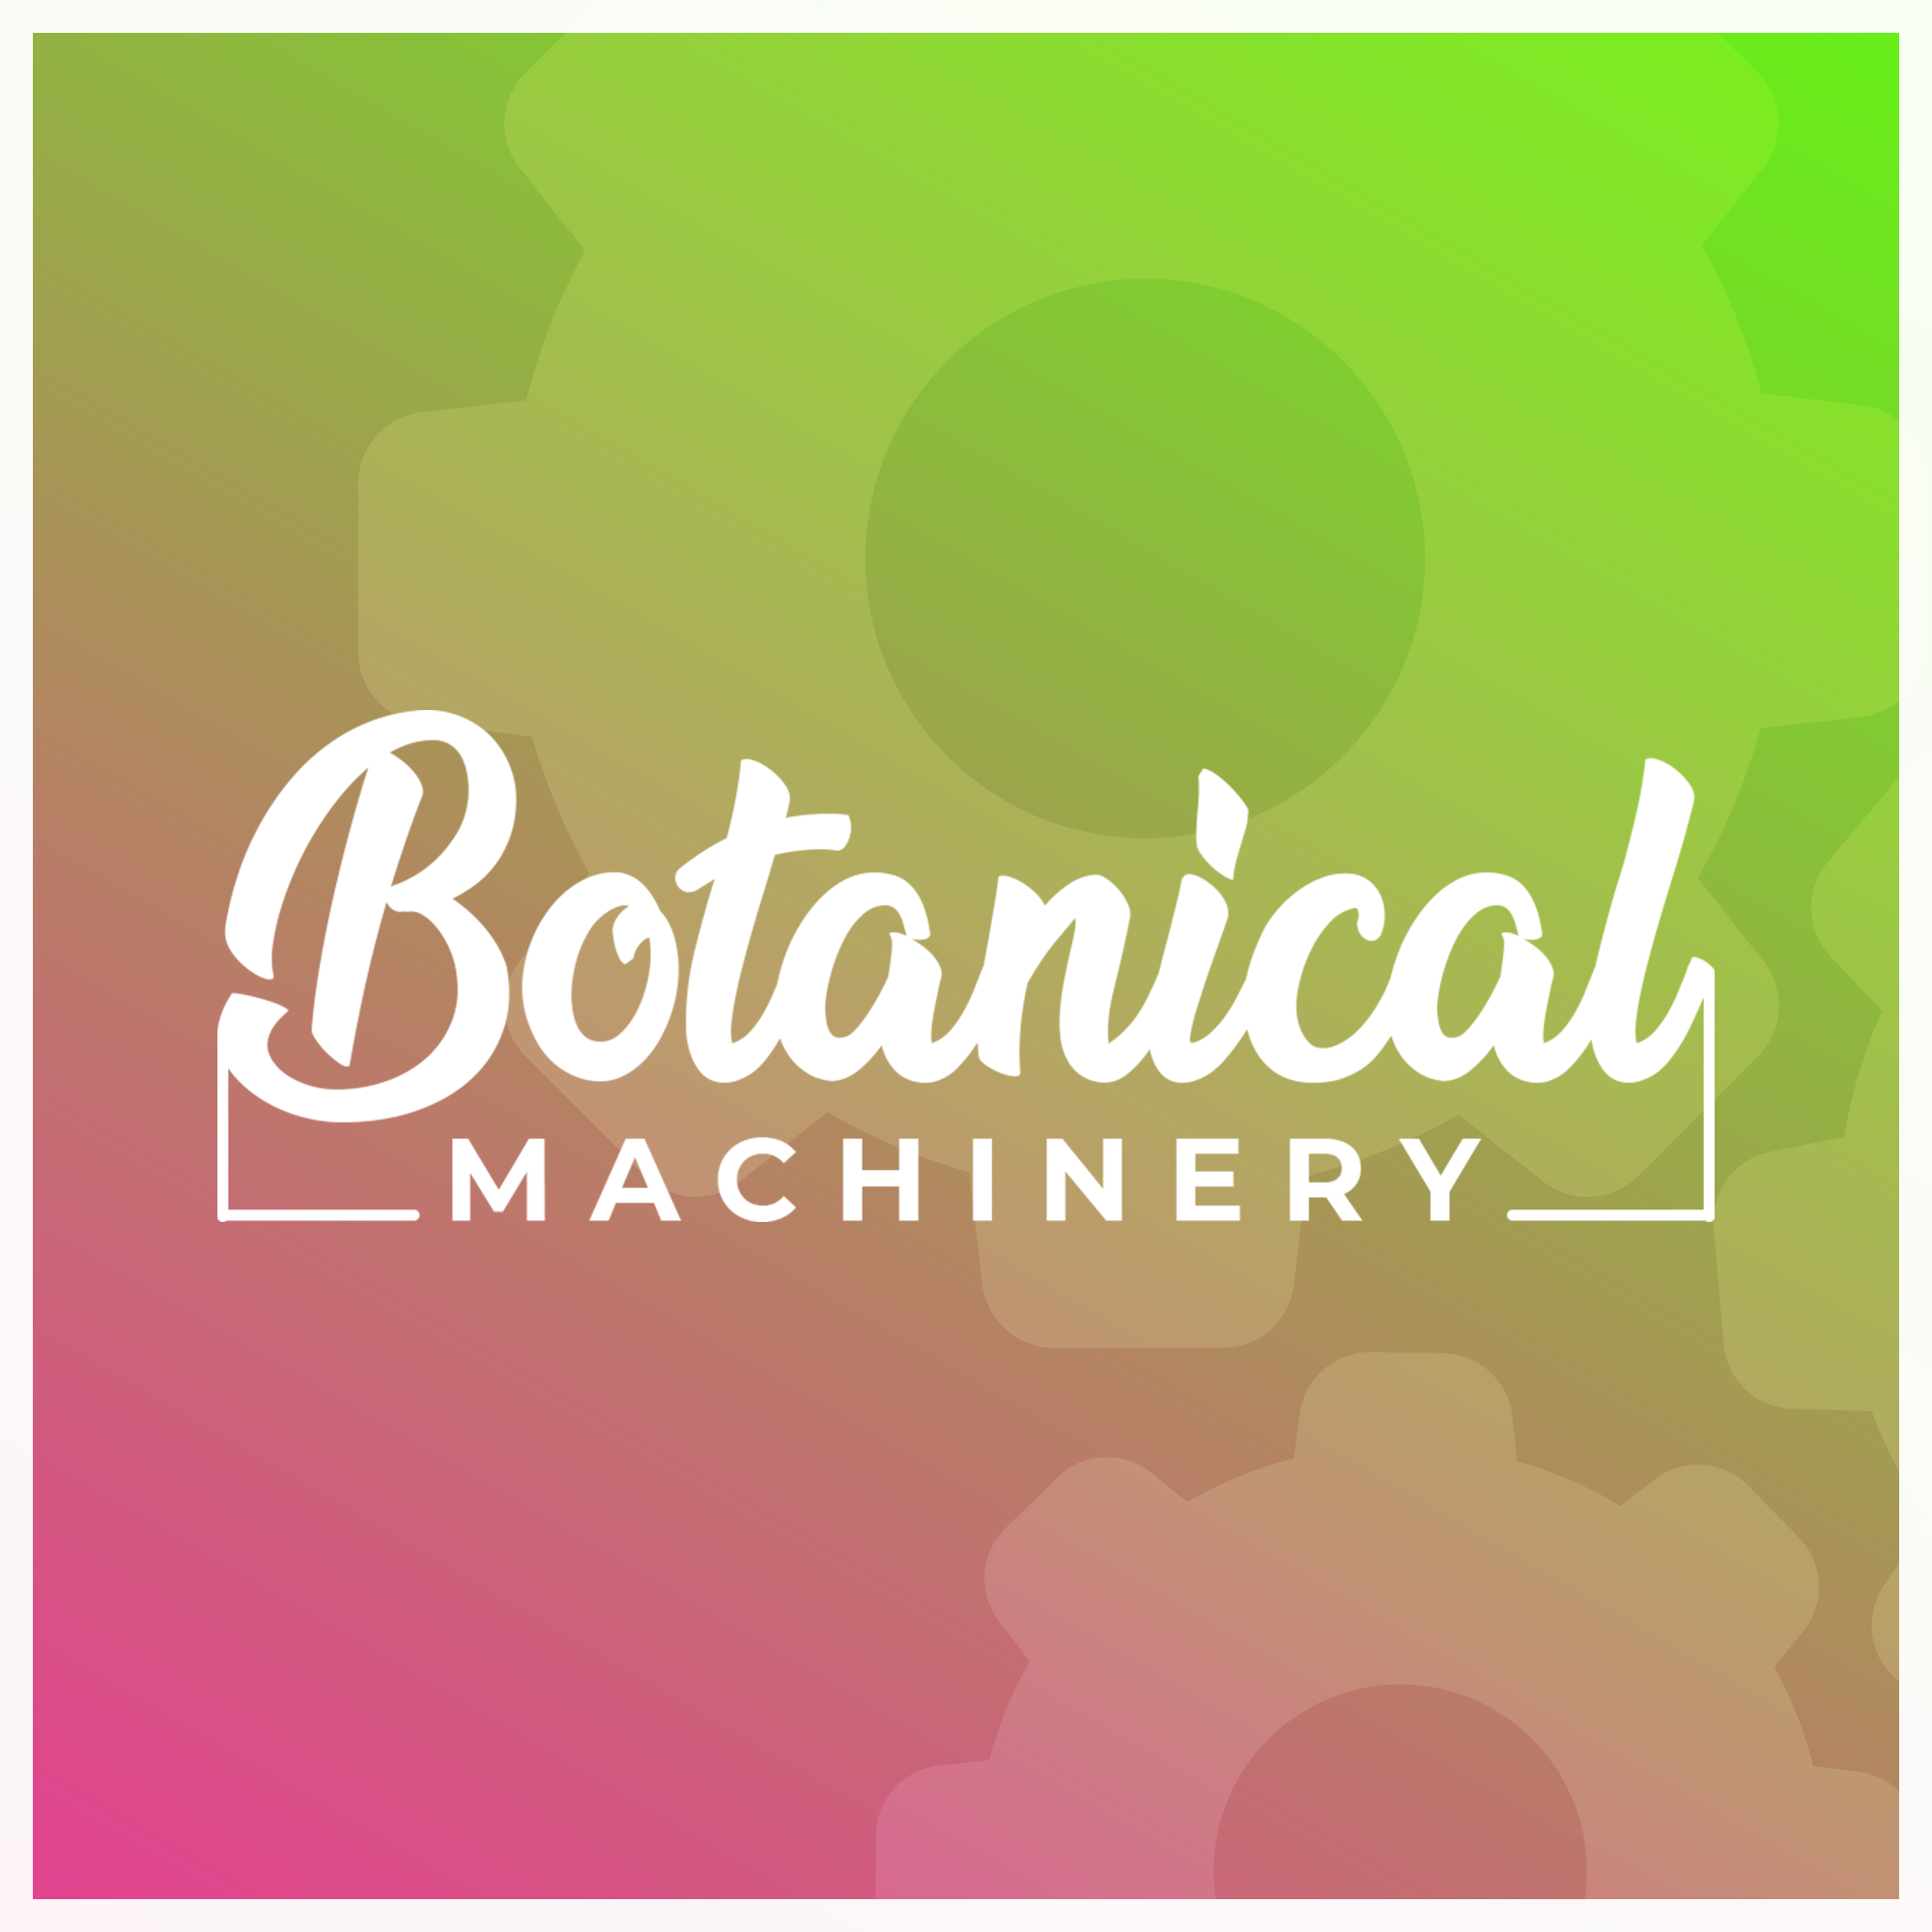 Botanical Machinery